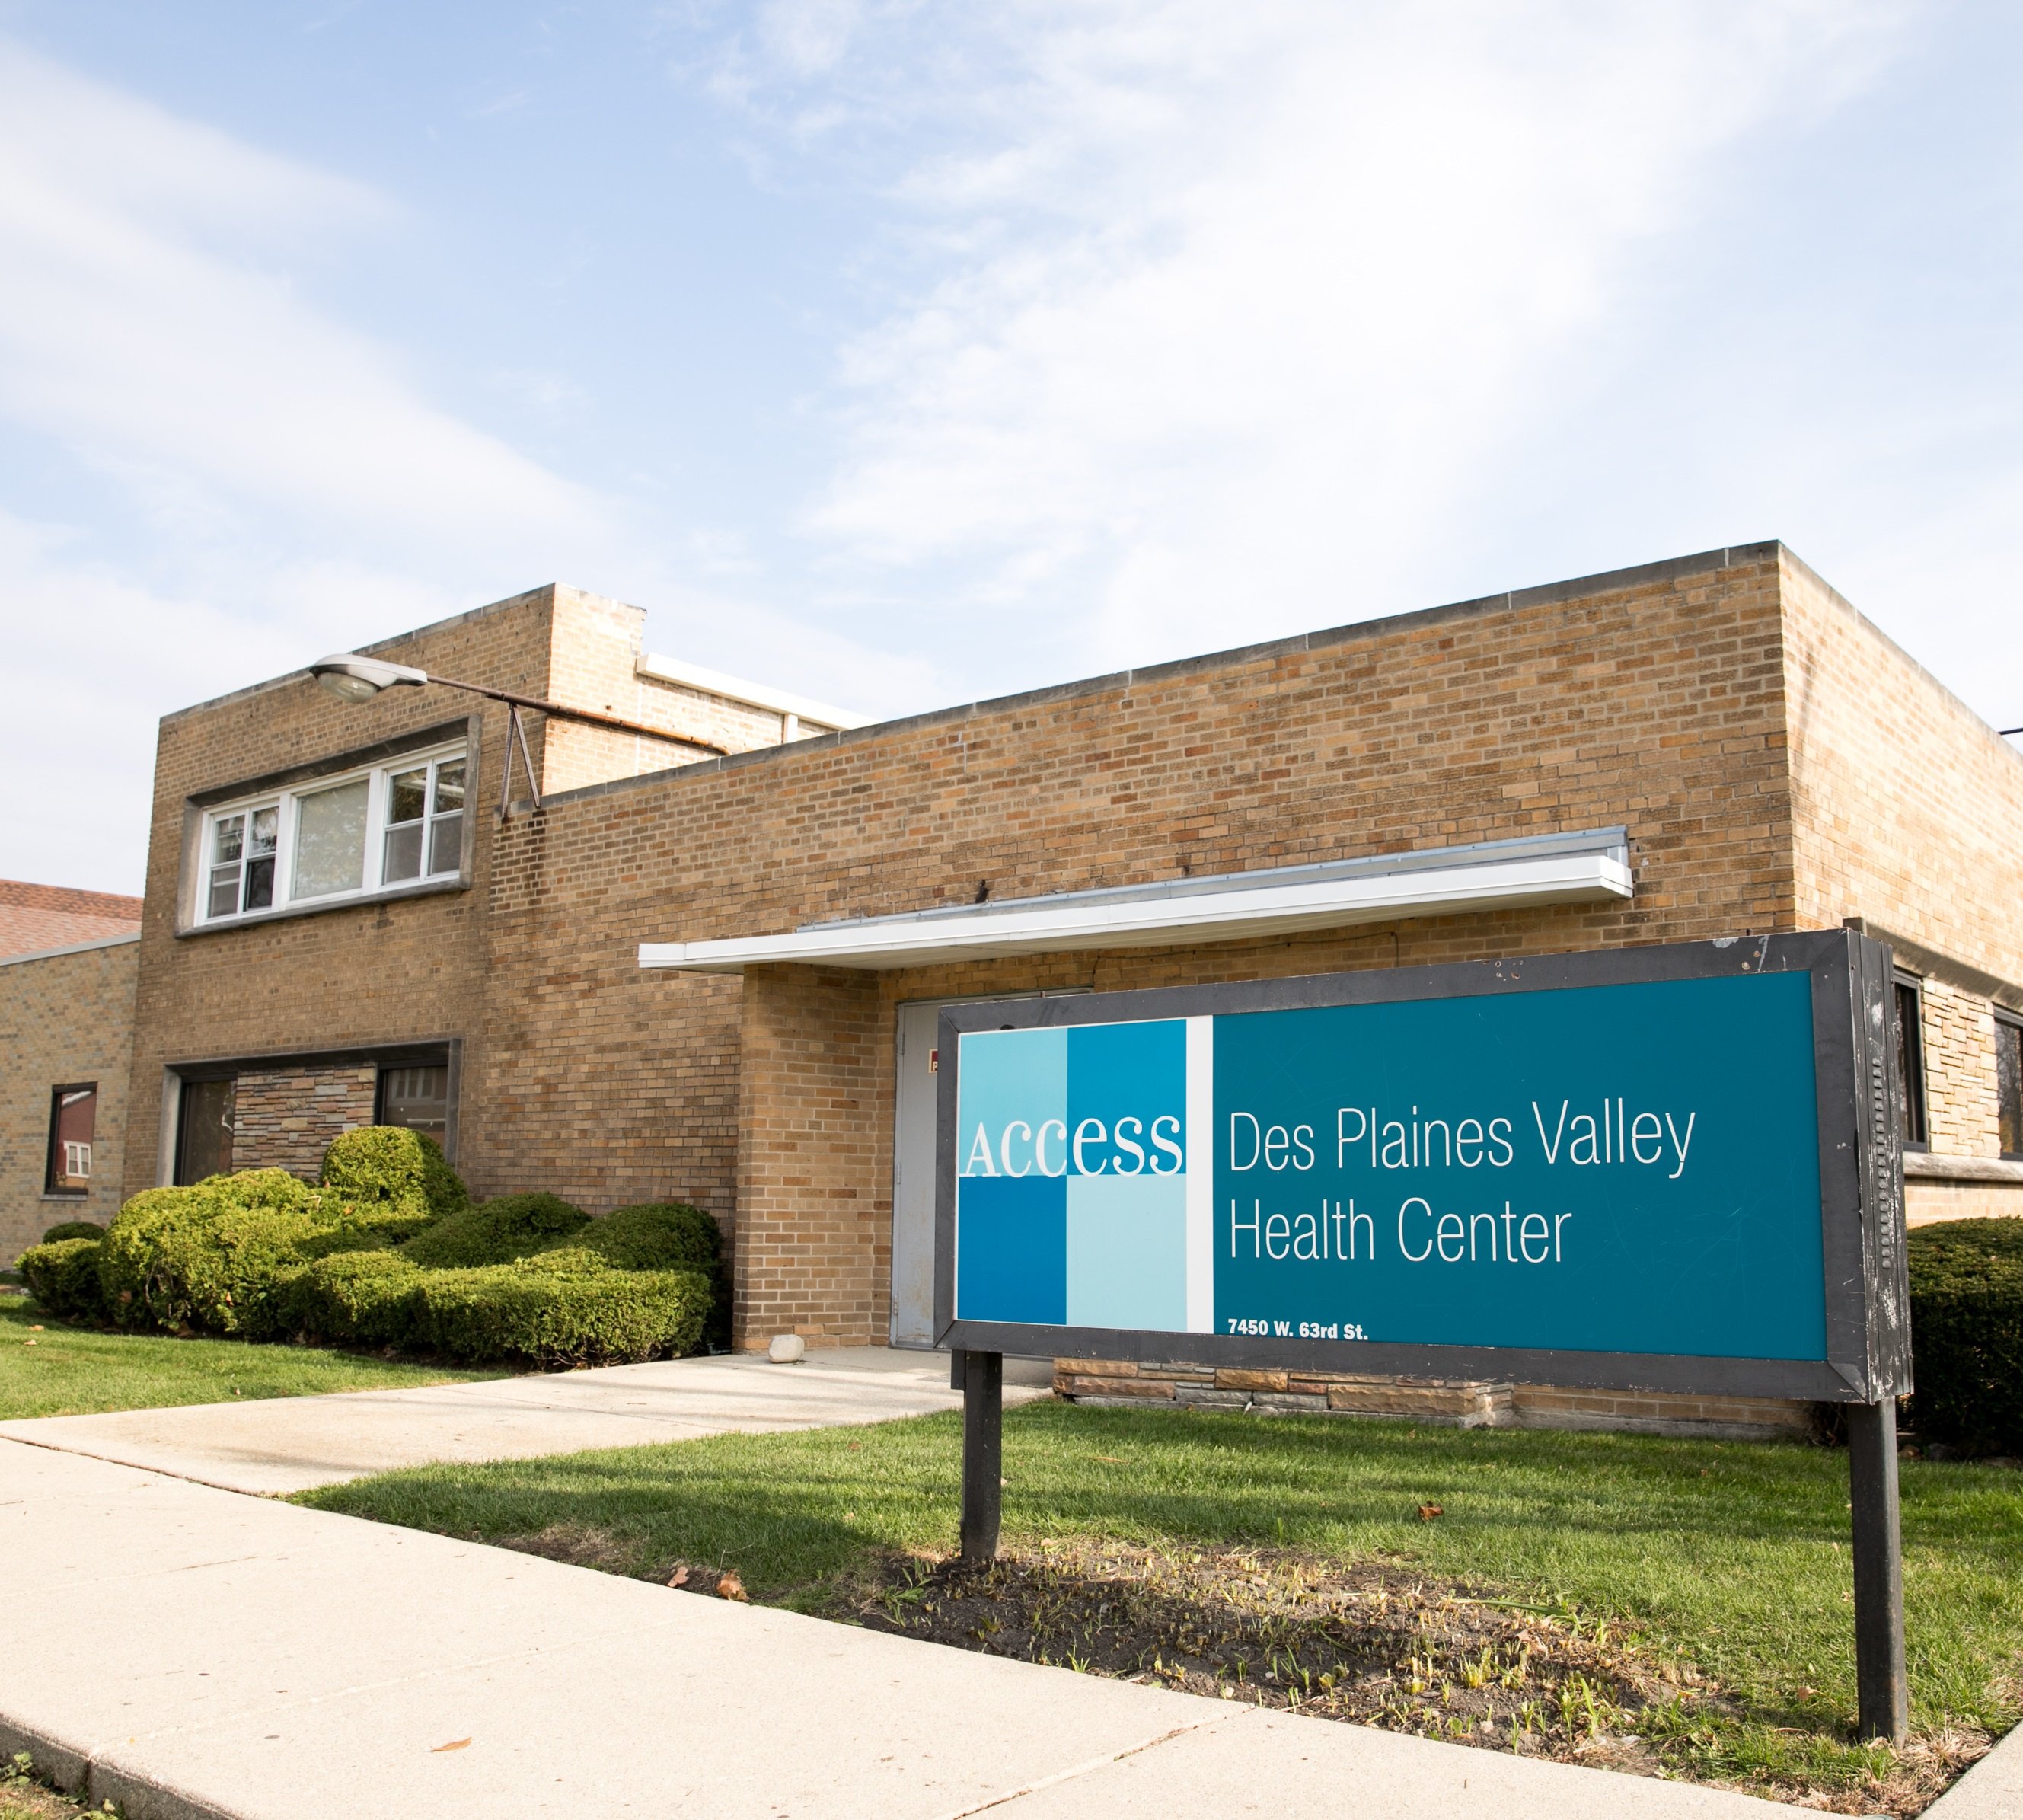 Access Des Plaines Valley Health Center